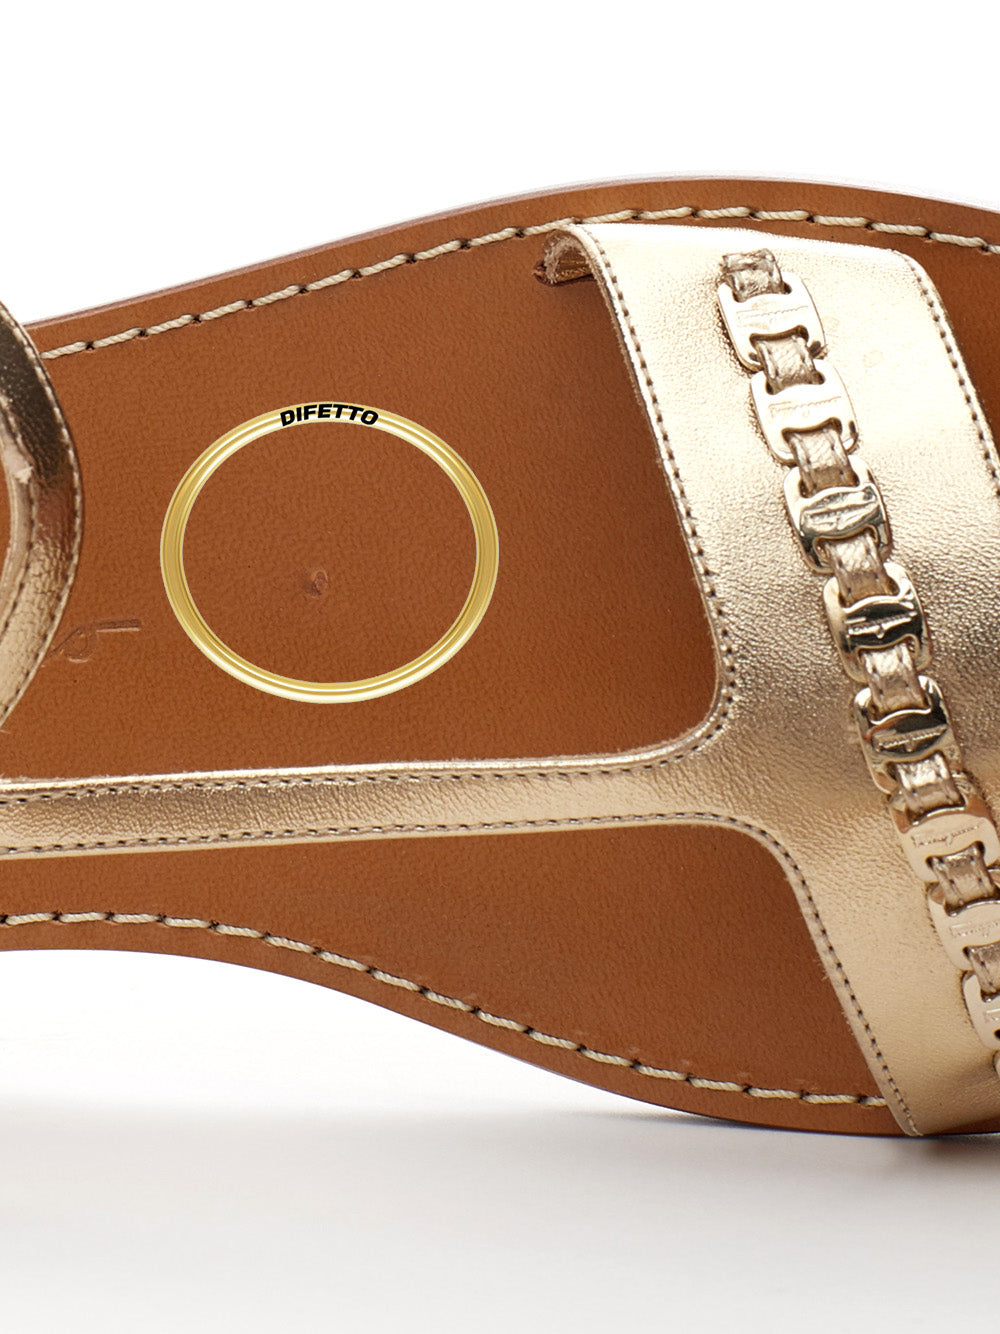 Salvatore Ferragamo Varina Gold Leather Sandals